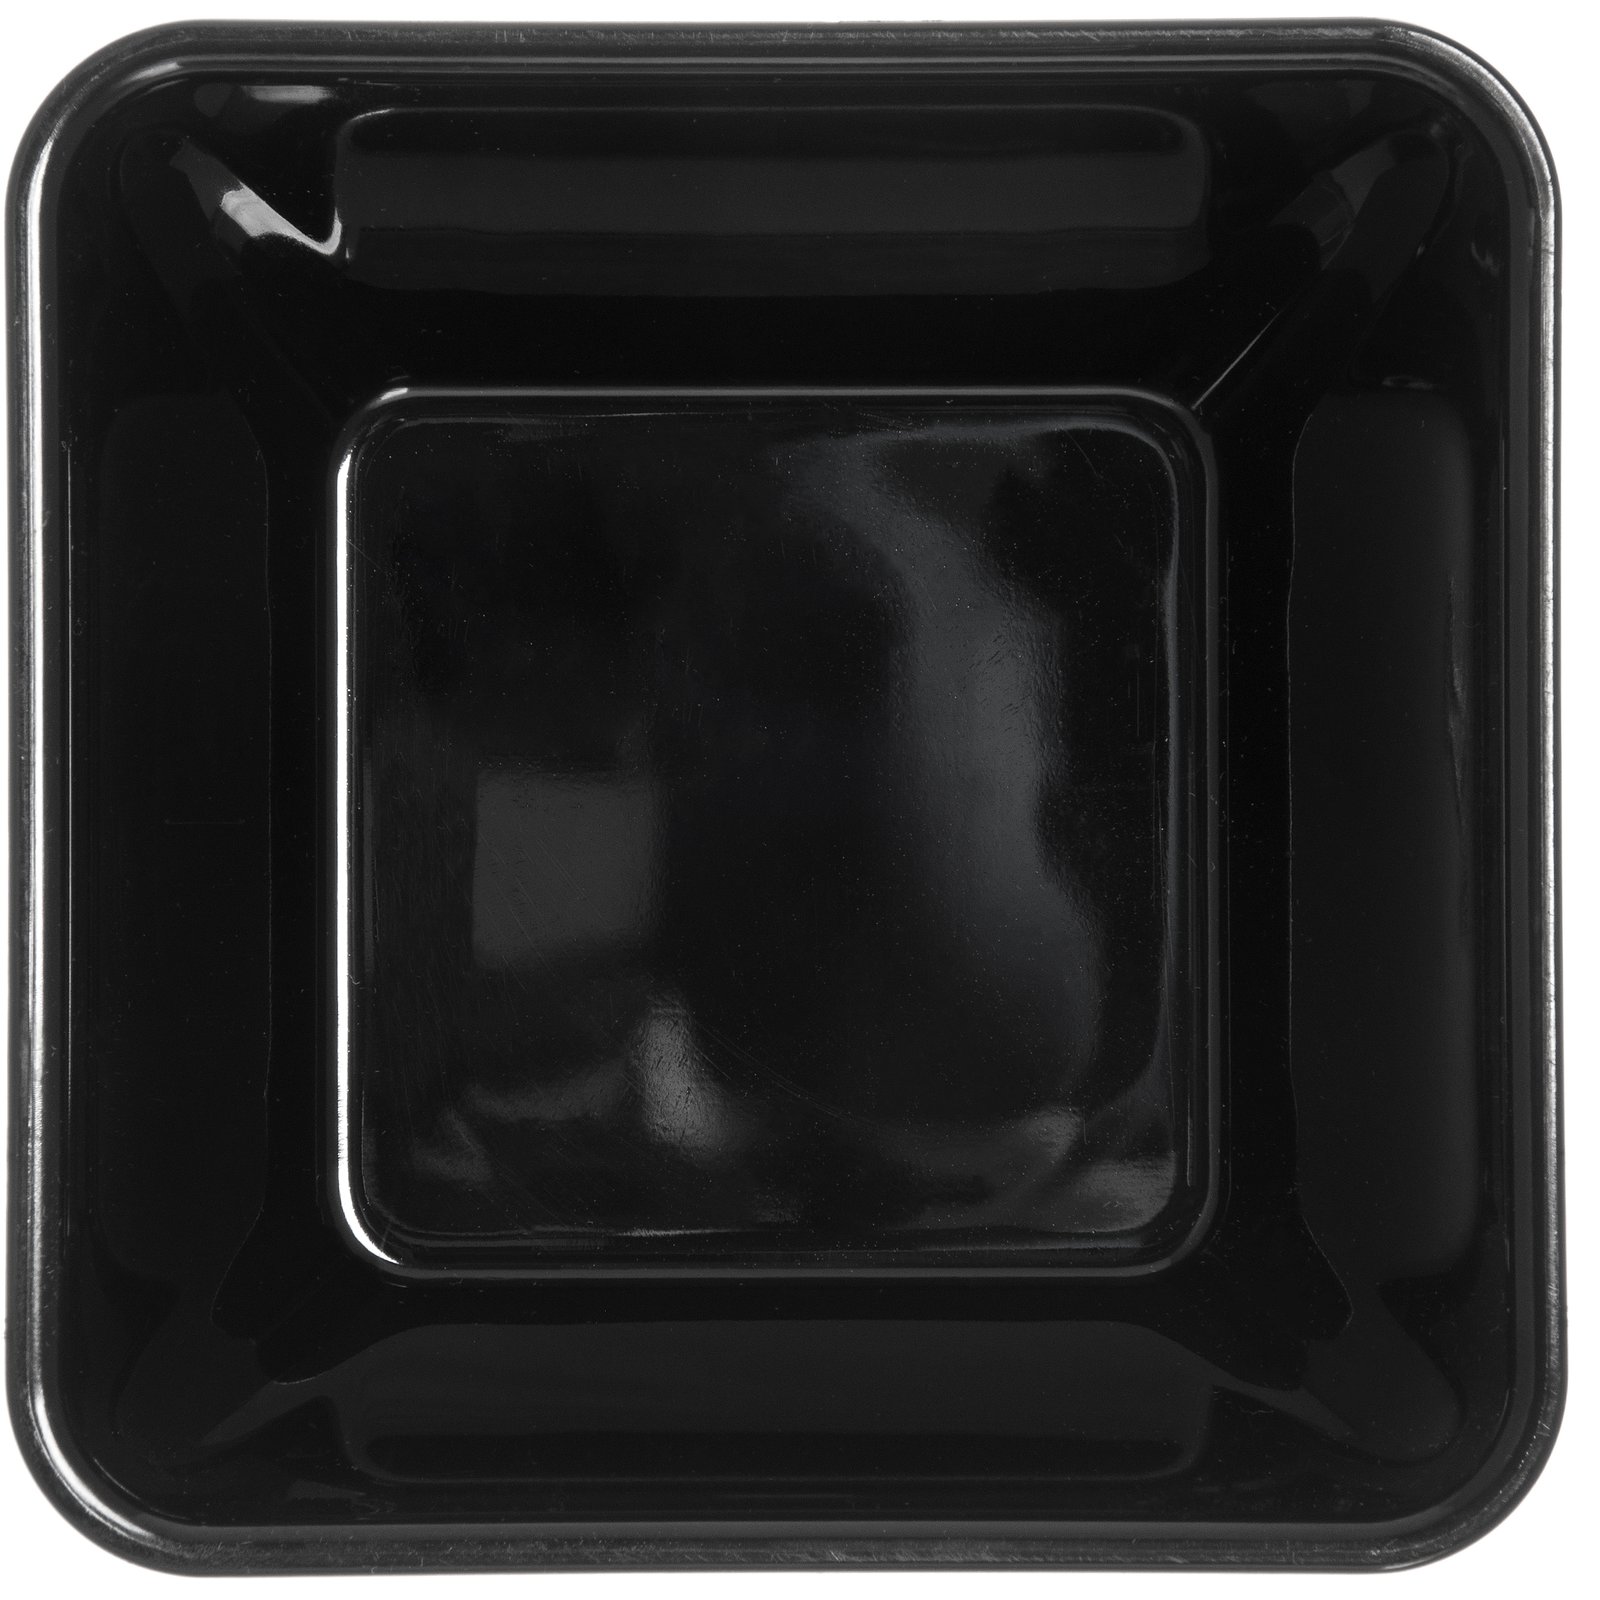 DXSB1203 - Square Bowl 12 oz (48/cs) - Black